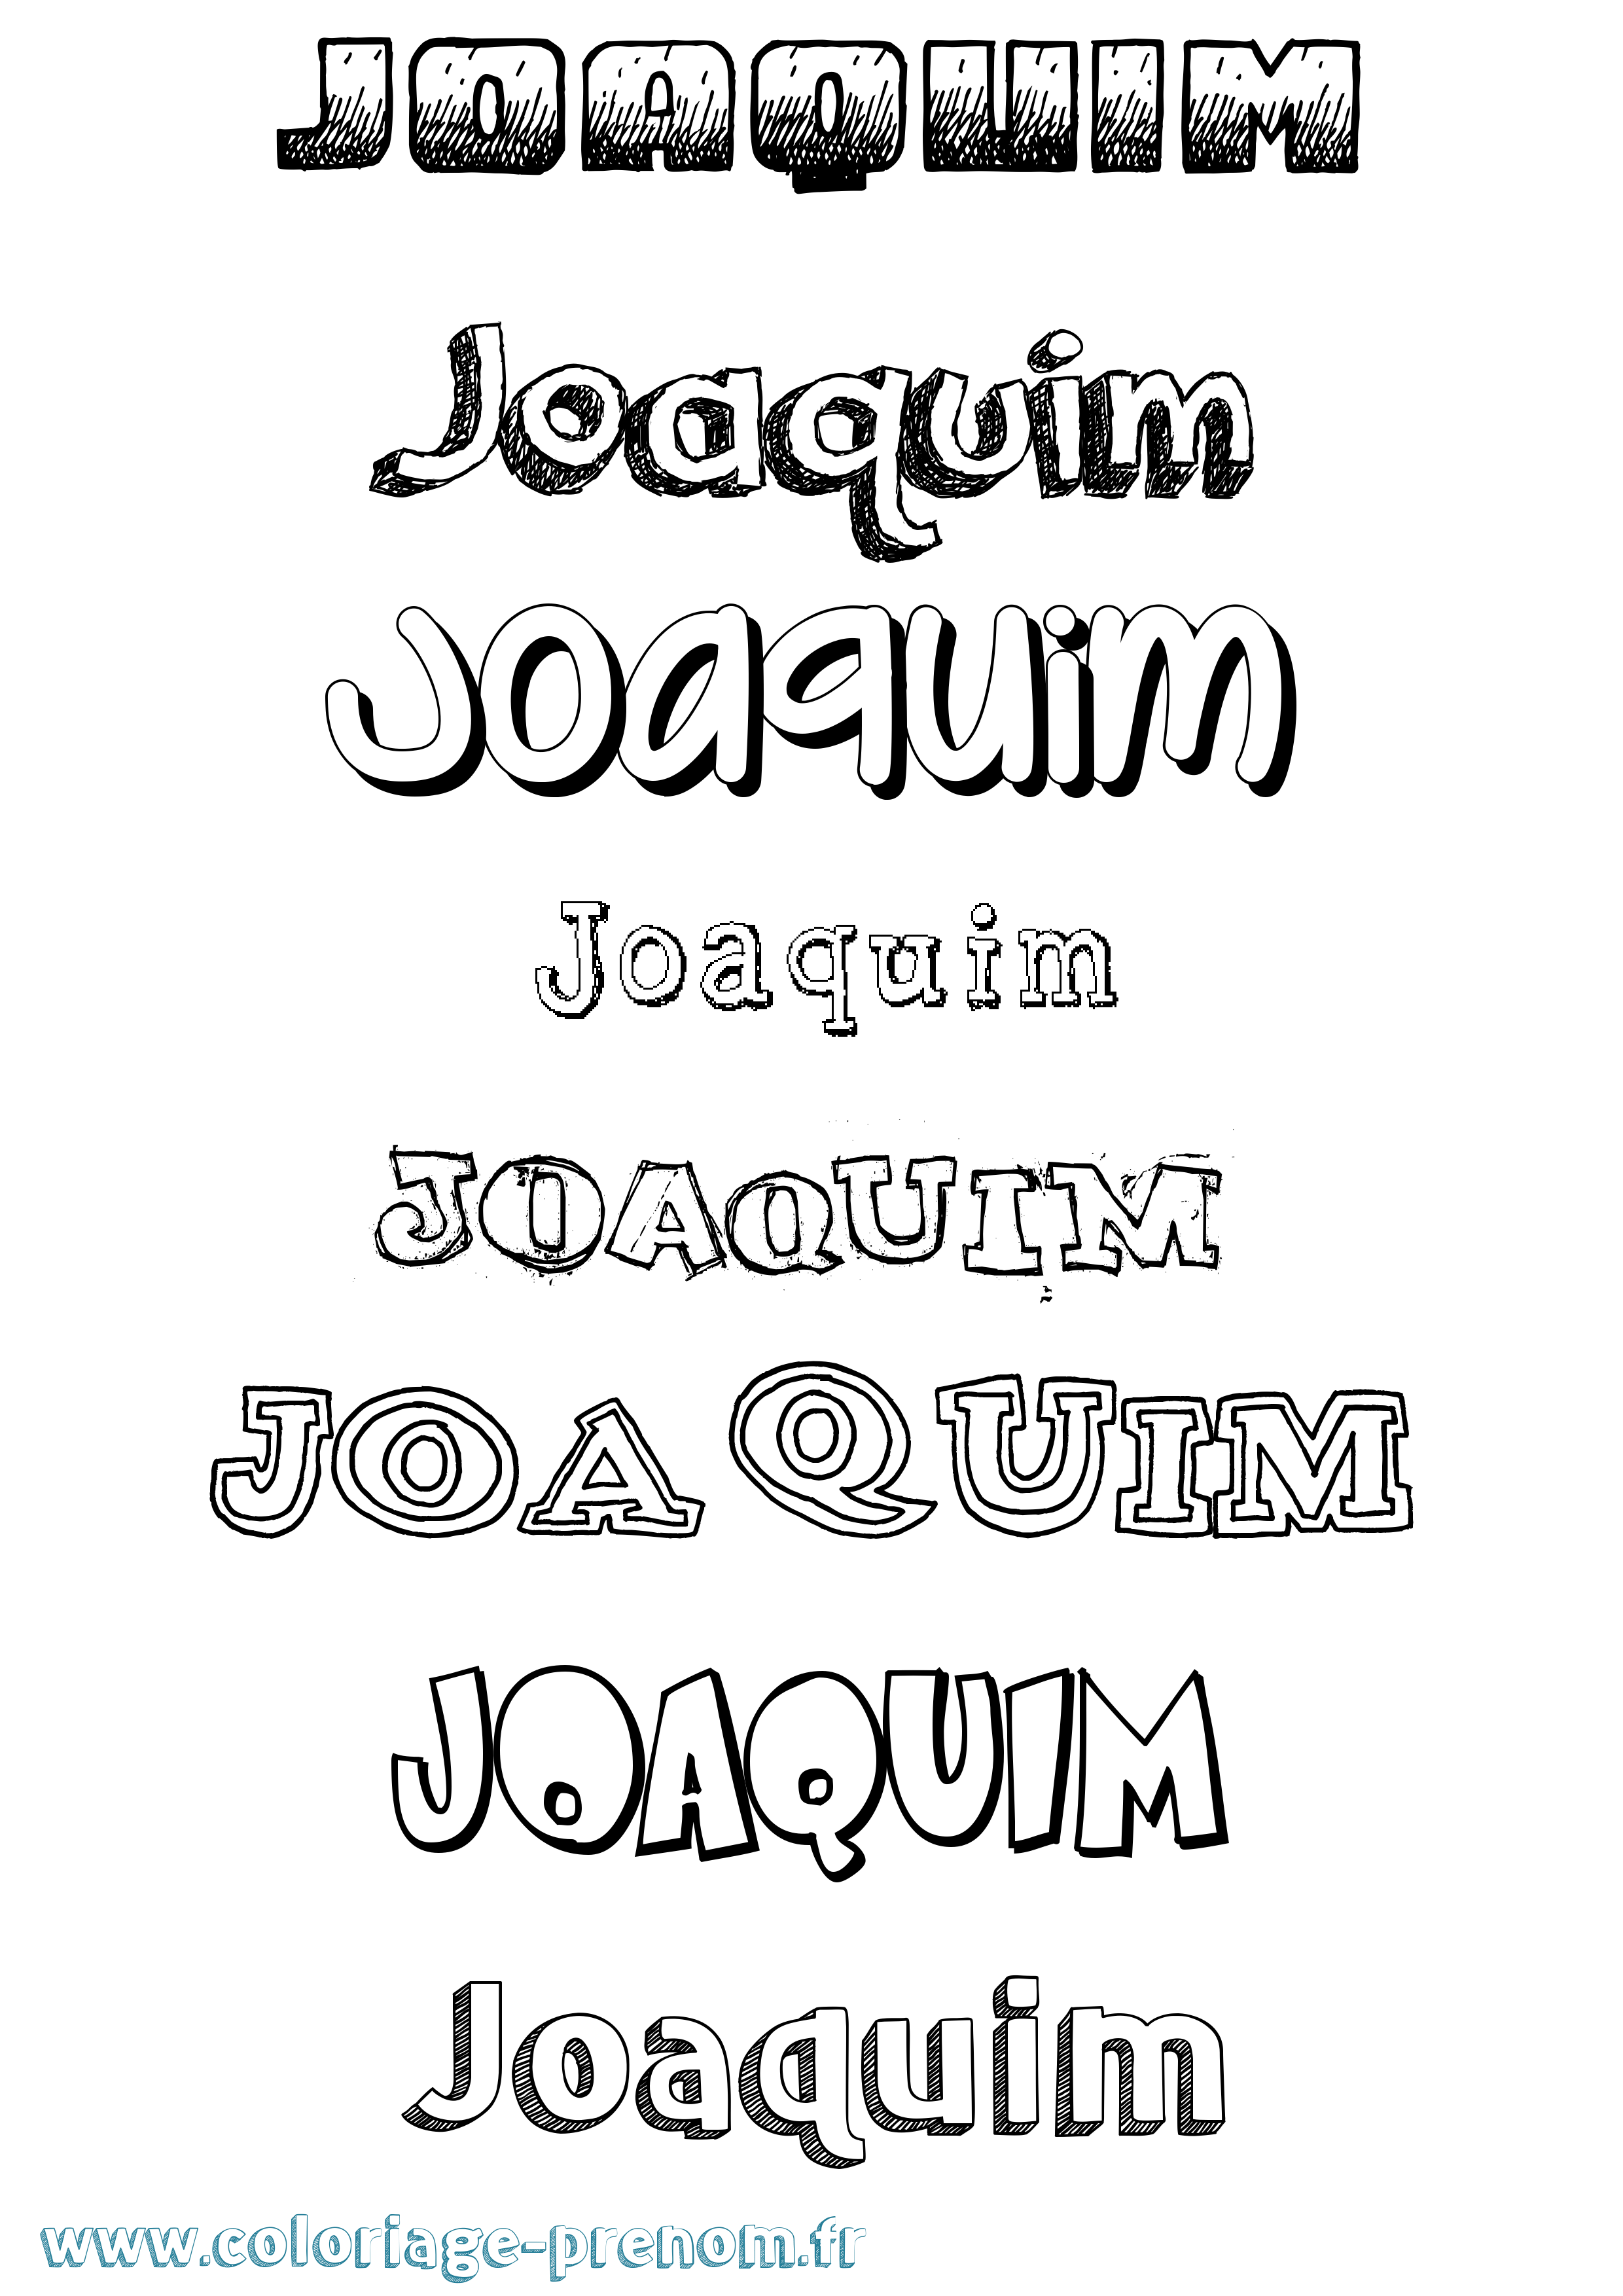 Coloriage prénom Joaquim